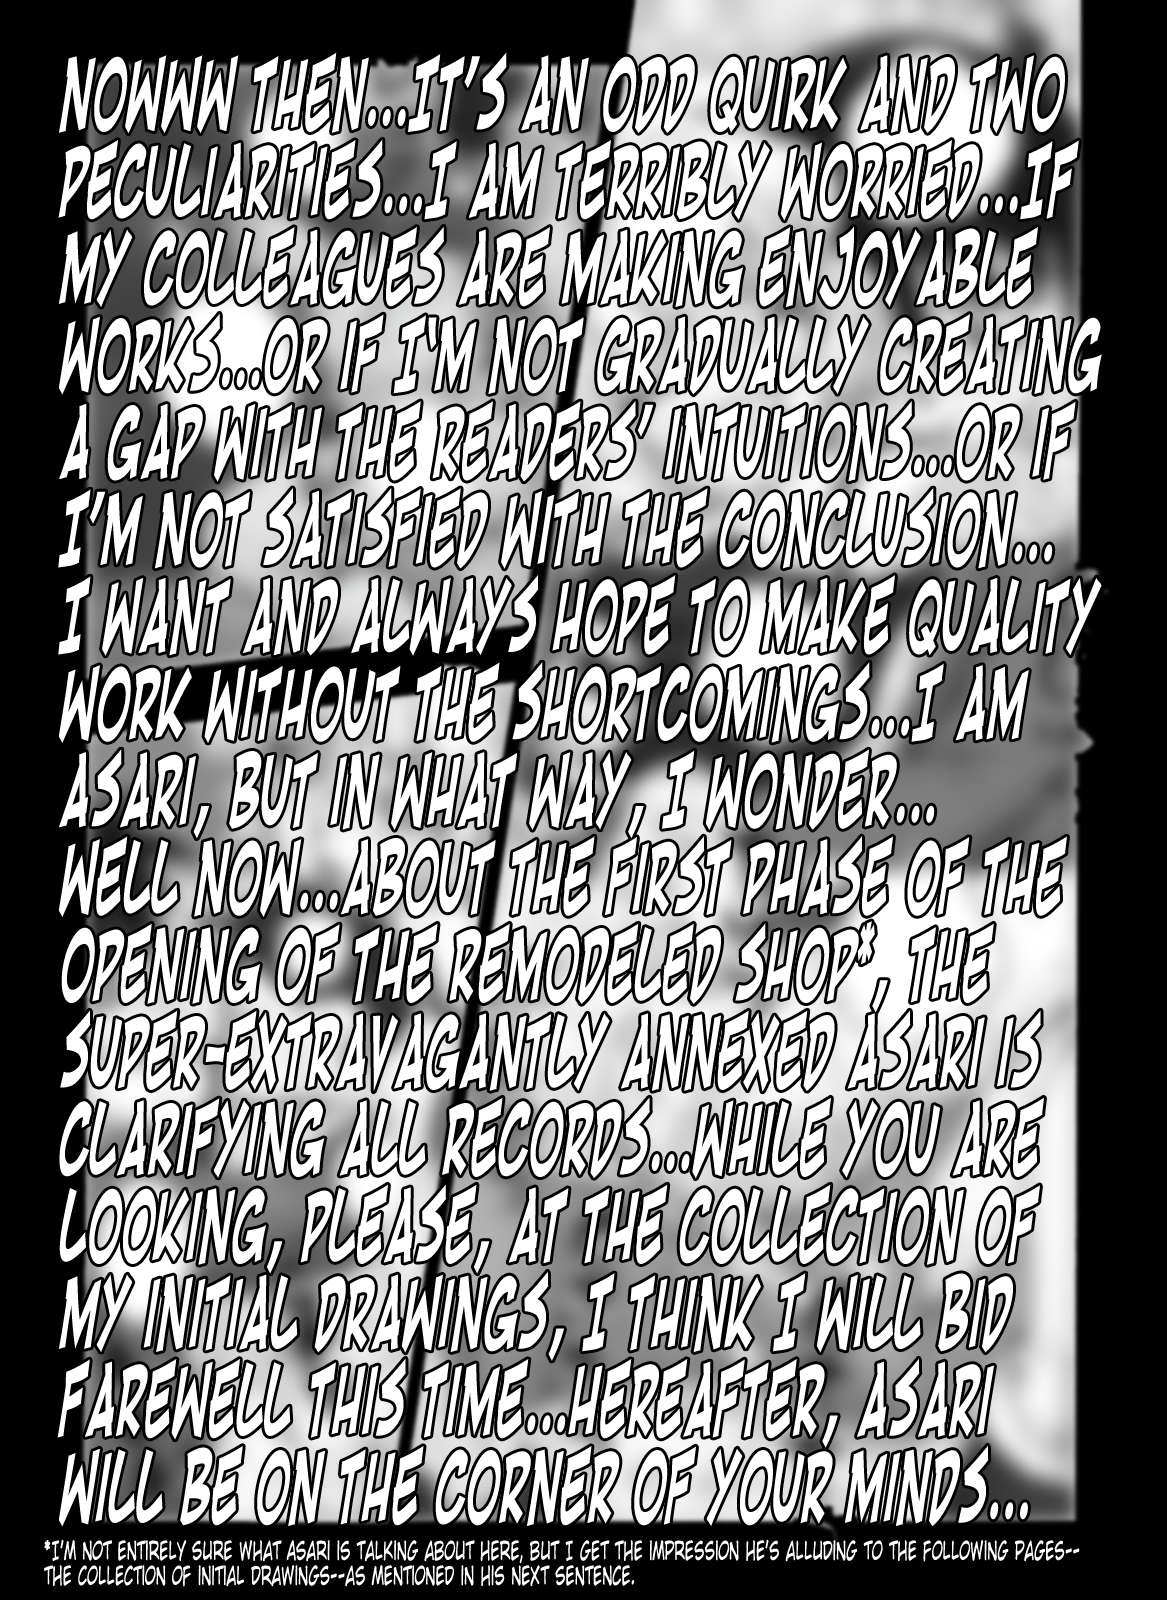 [未来屋 (あさりしめじ)] 迷探偵コナン-File 12-バックトゥザ未来の謎 (名探偵コナン) [トニゴビによる英訳]